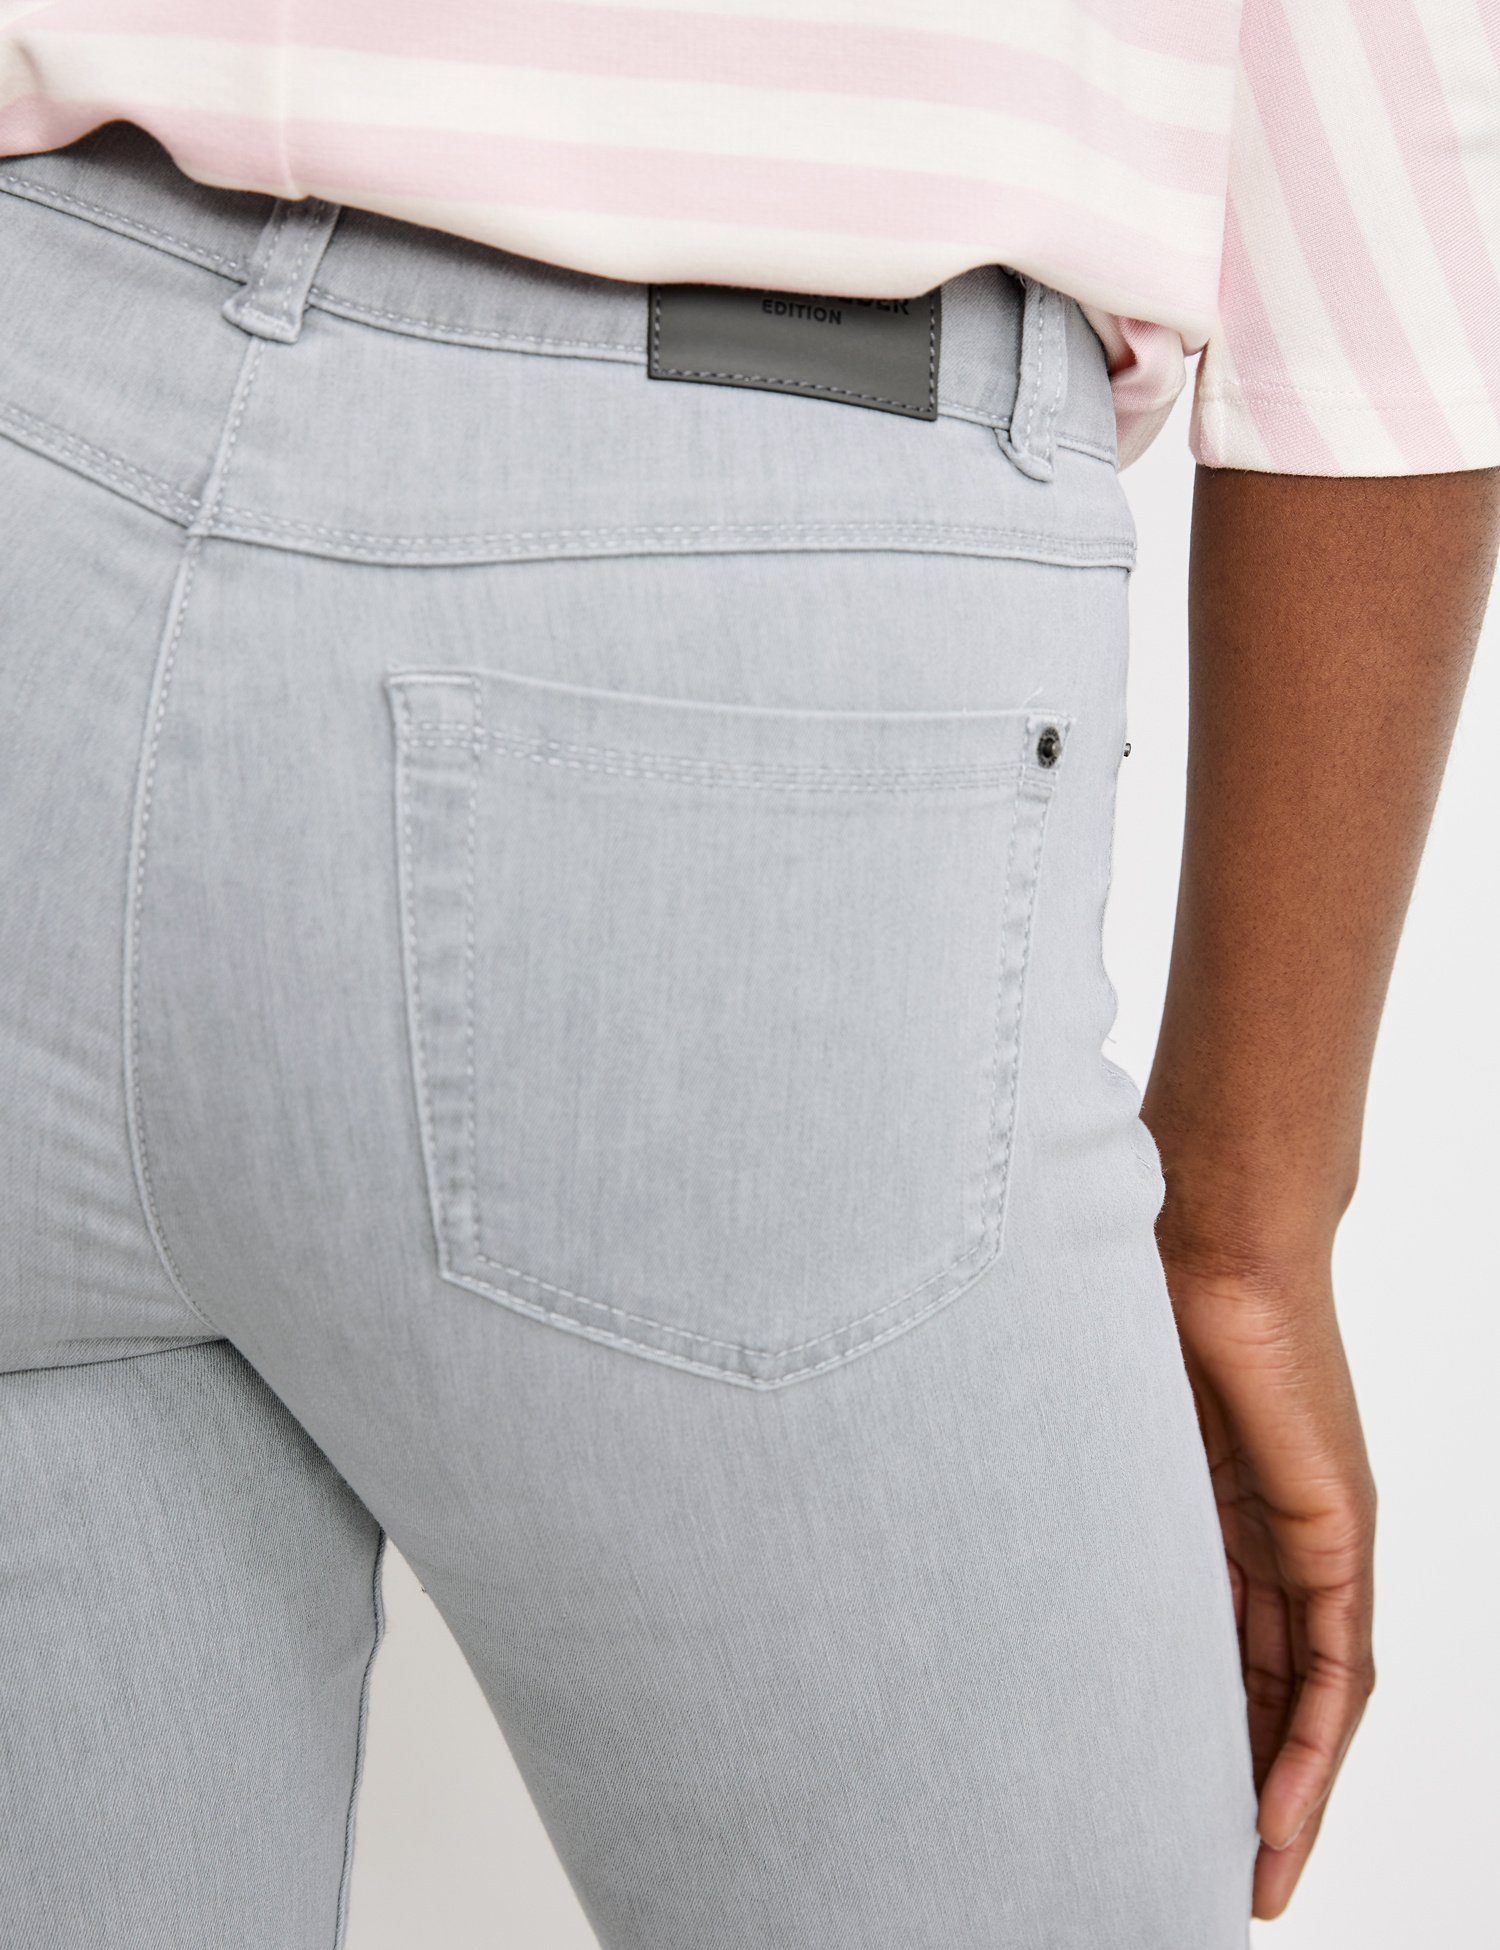 Fit WEBER grey Hose Slim light 5-pocket GERRY Slim-fit-Jeans denim